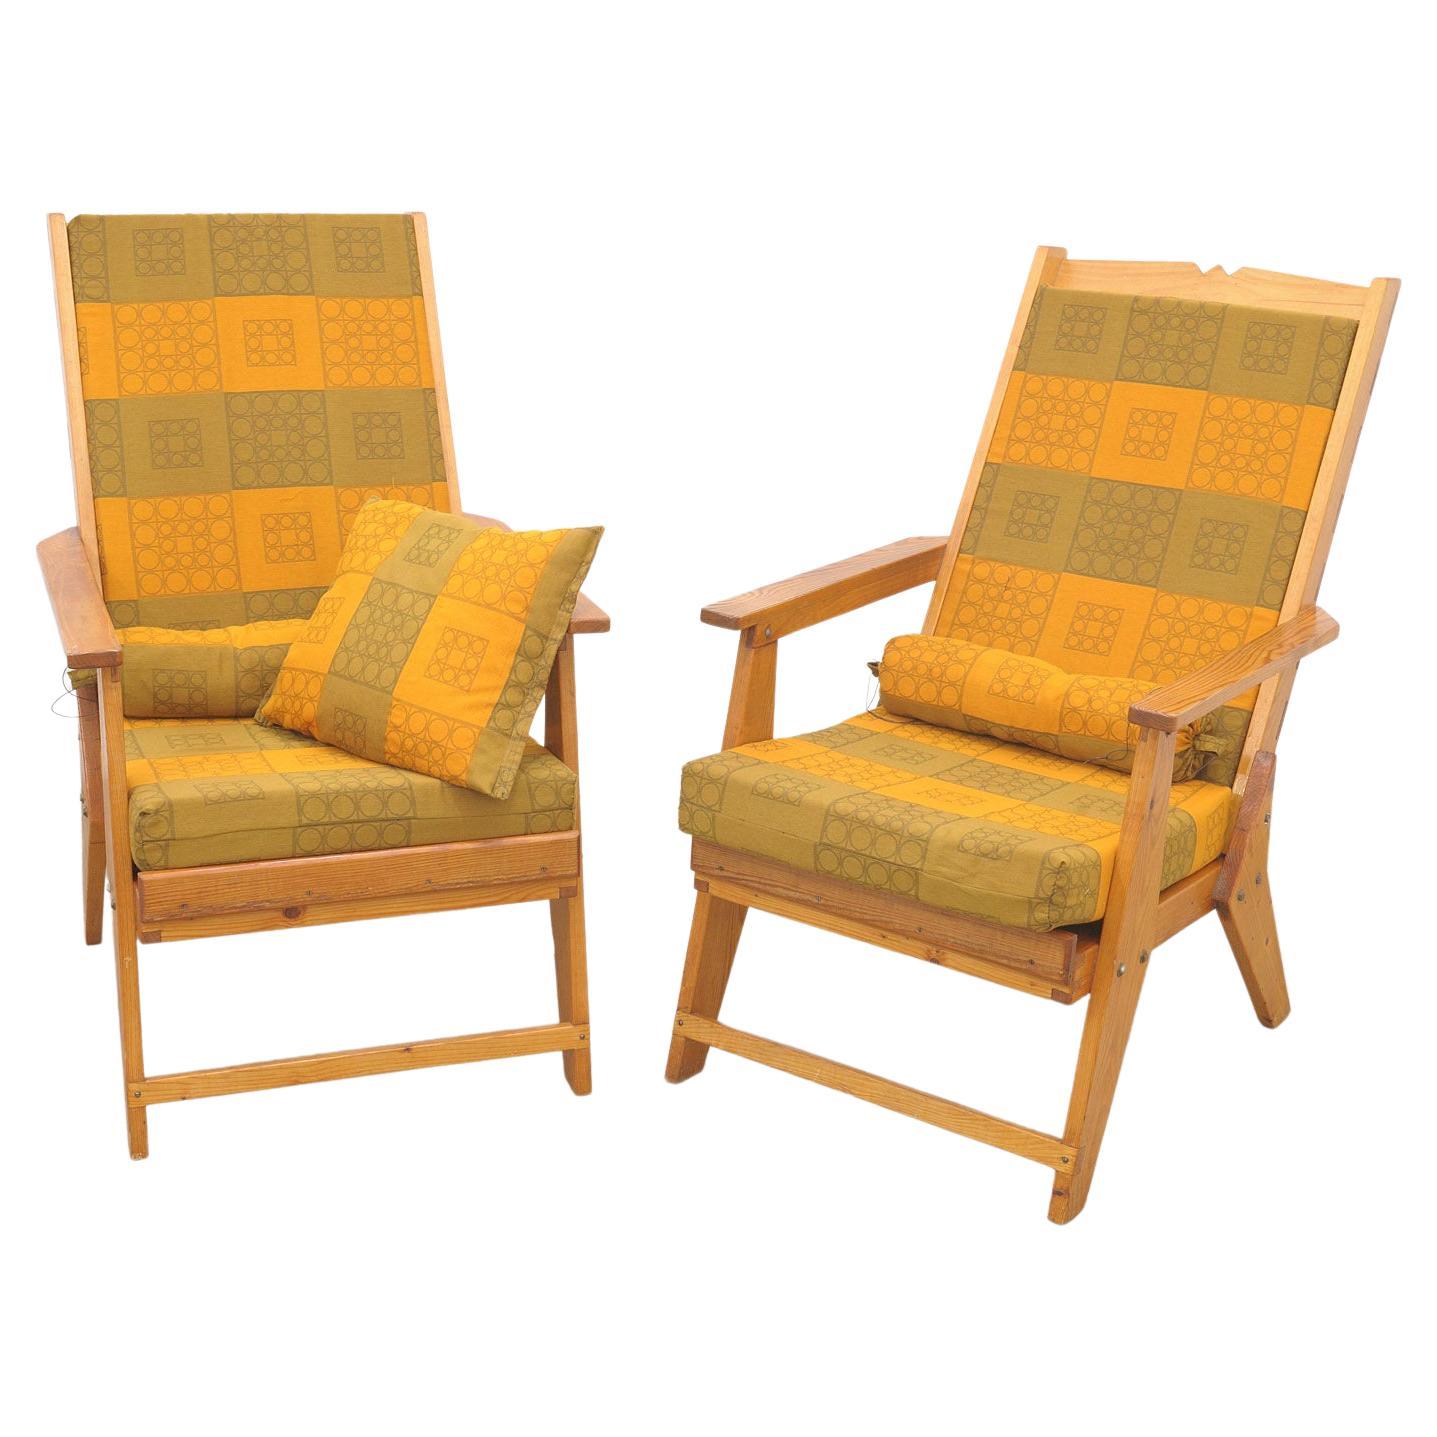 Fauteuils énormes de style scandinave vintage, fabriqués dans les années 1970.

La structure est en bois de pin, les chaises ont des coussins originaux.

En très bon état Vintage, montrant de légers signes d'âge et d'utilisation.

Le prix correspond